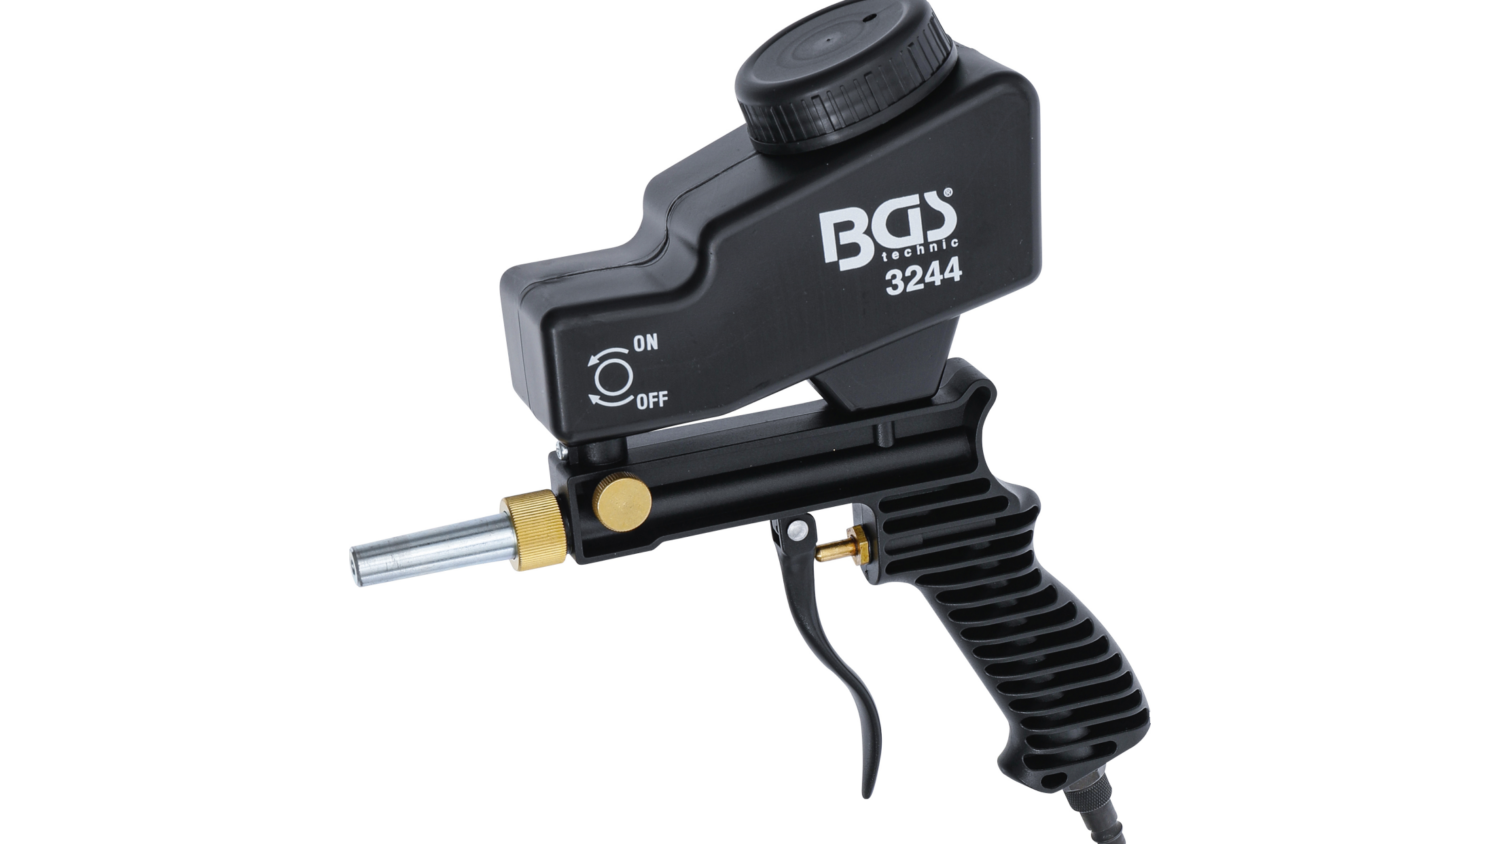 Bild der BGS Druckluft-Sandstrahlpistole